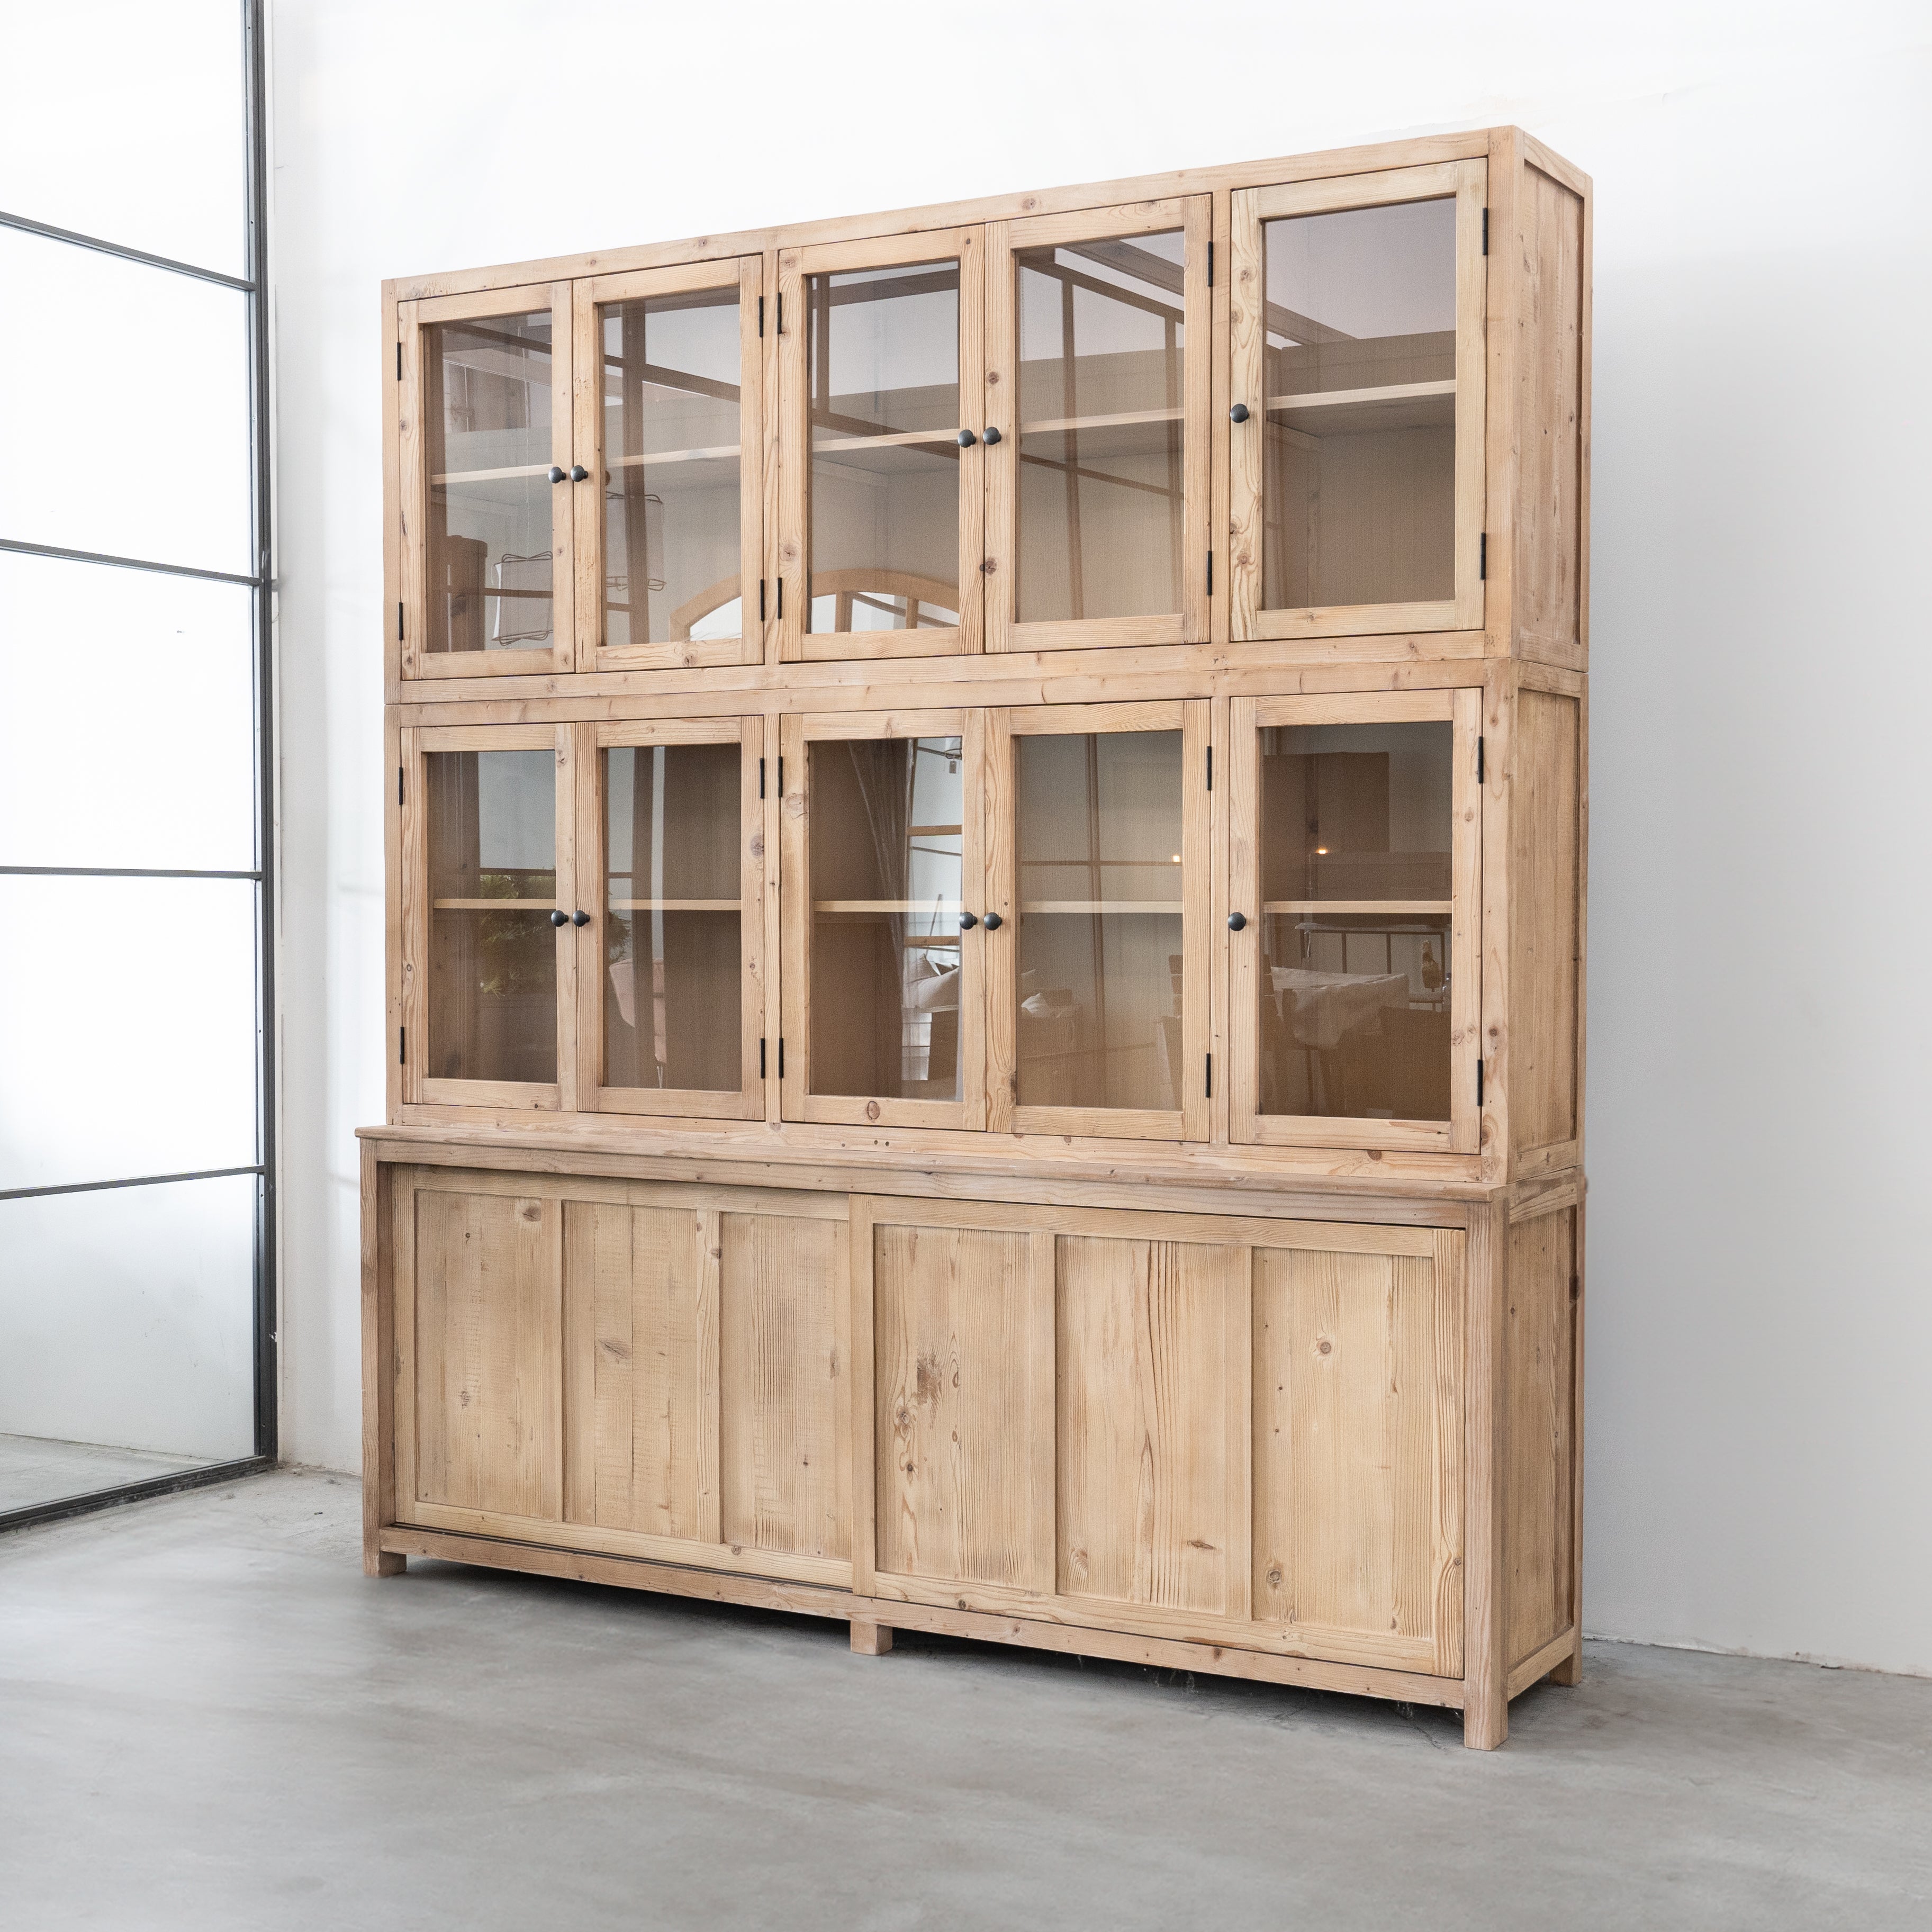 Roselyn Cupboard  - WS Living - UAE - Cupboard Wood and steel Furnitures - Dubai